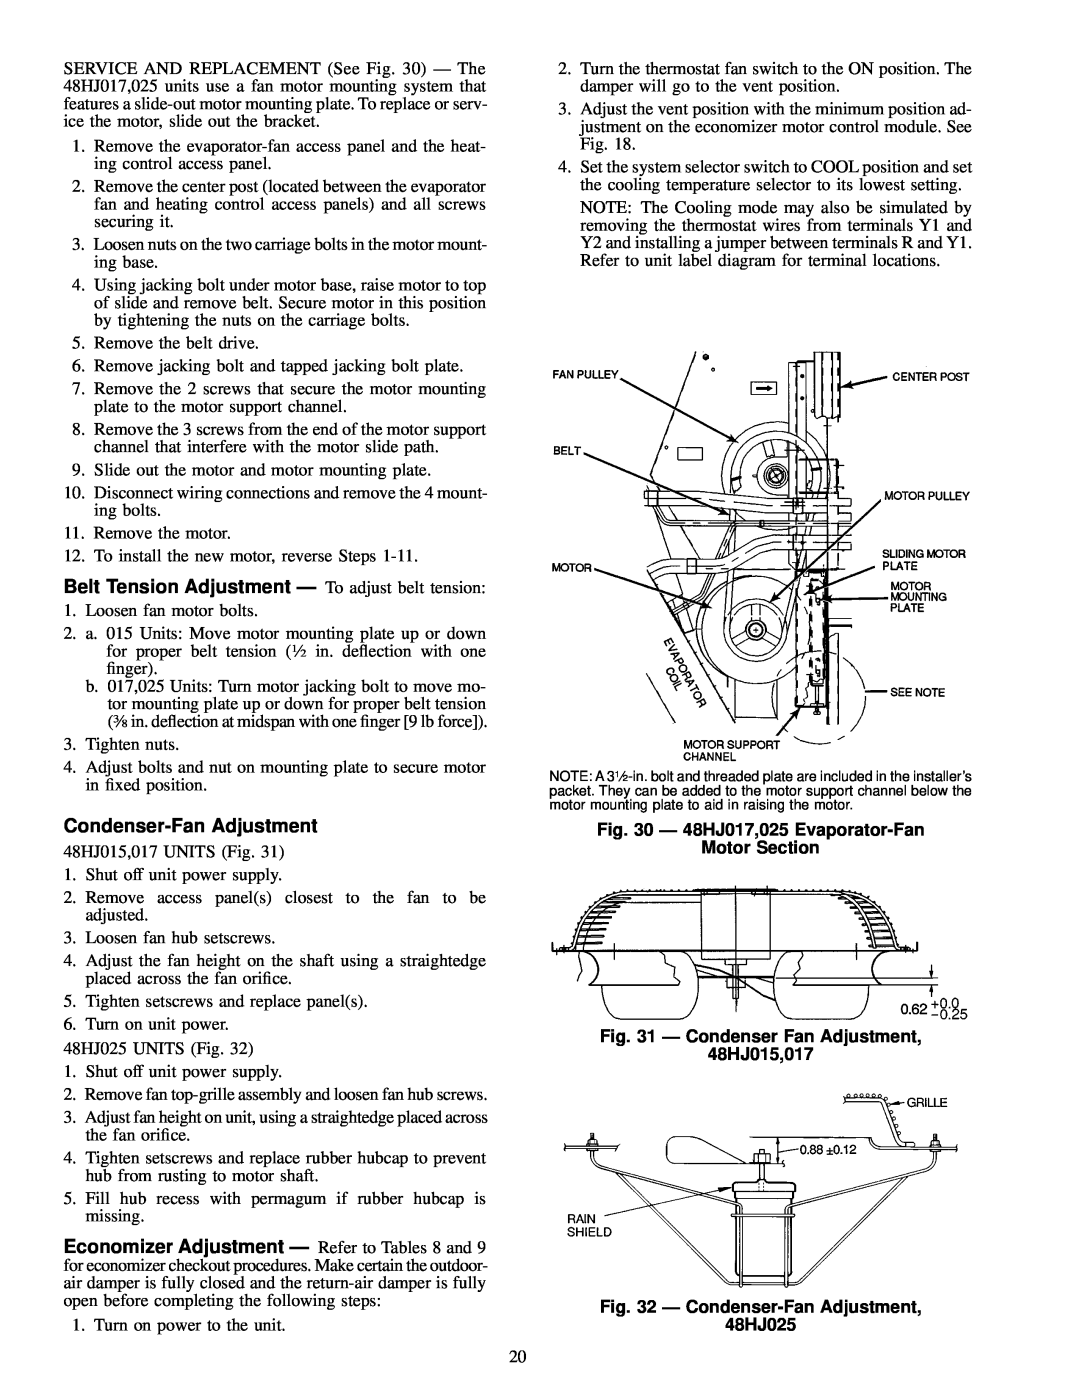 Carrier 48HJ015-025 Belt Tension Adjustment Ð To adjust belt tension, Condenser-FanAdjustment, 48HJ025 